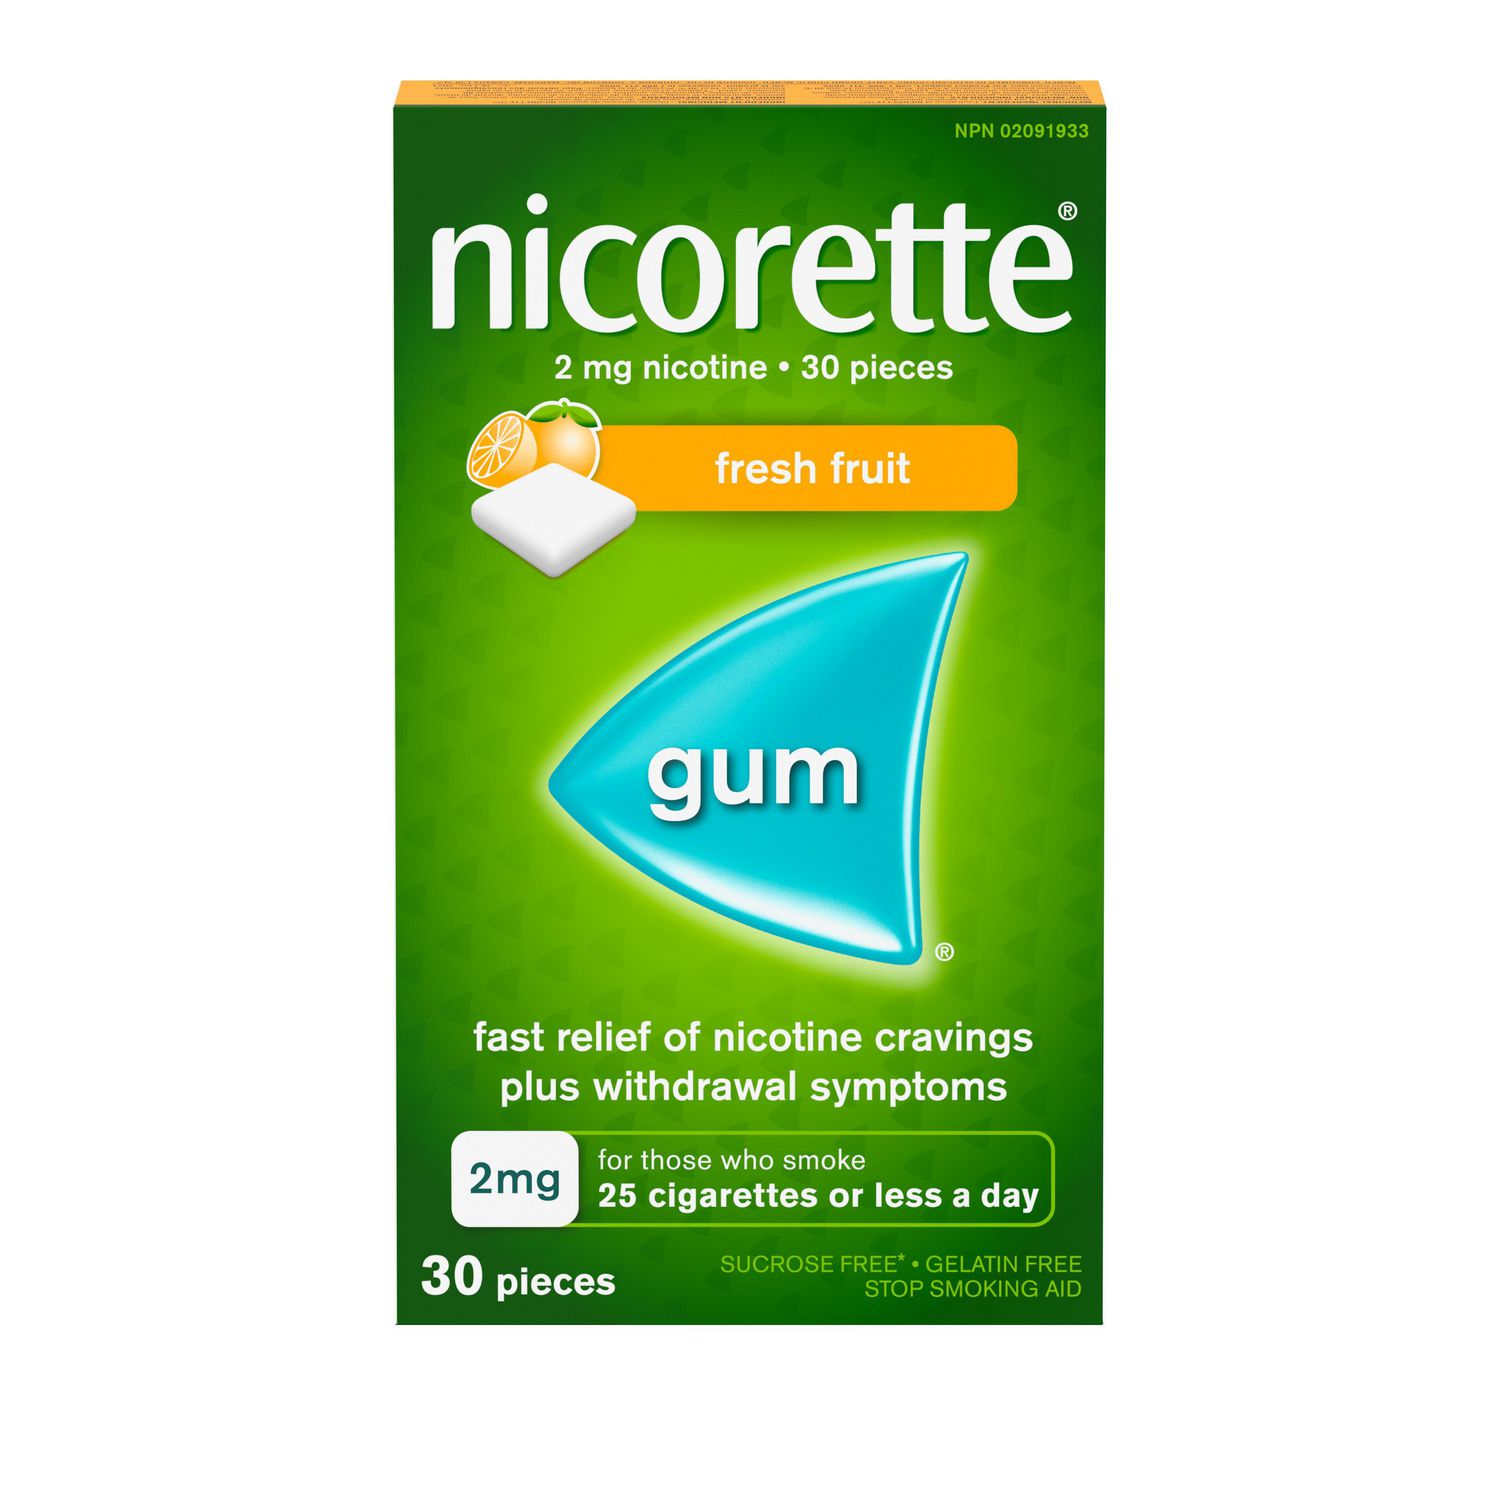 Nicorette Nicotine Gum Quit Smoking Aid Fresh Fruit 2mg Walmart Canada